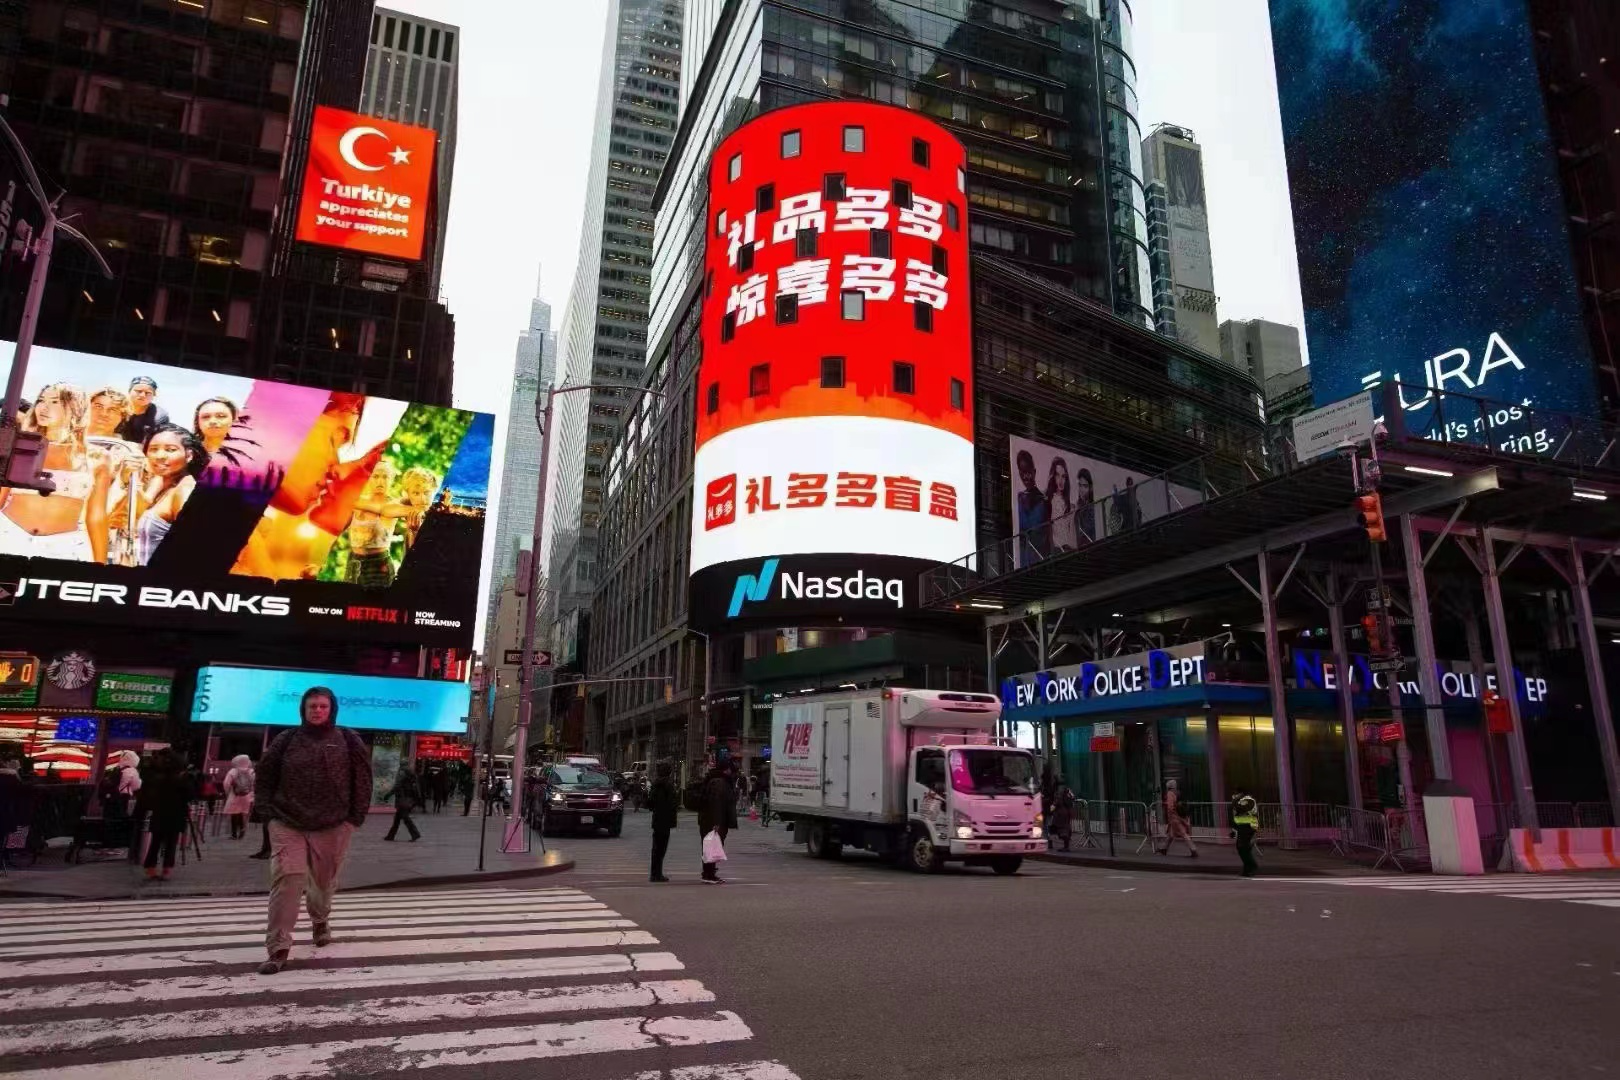 礼多多强势进军海外市场，登上纳斯达克大屏展示中国品牌实力 